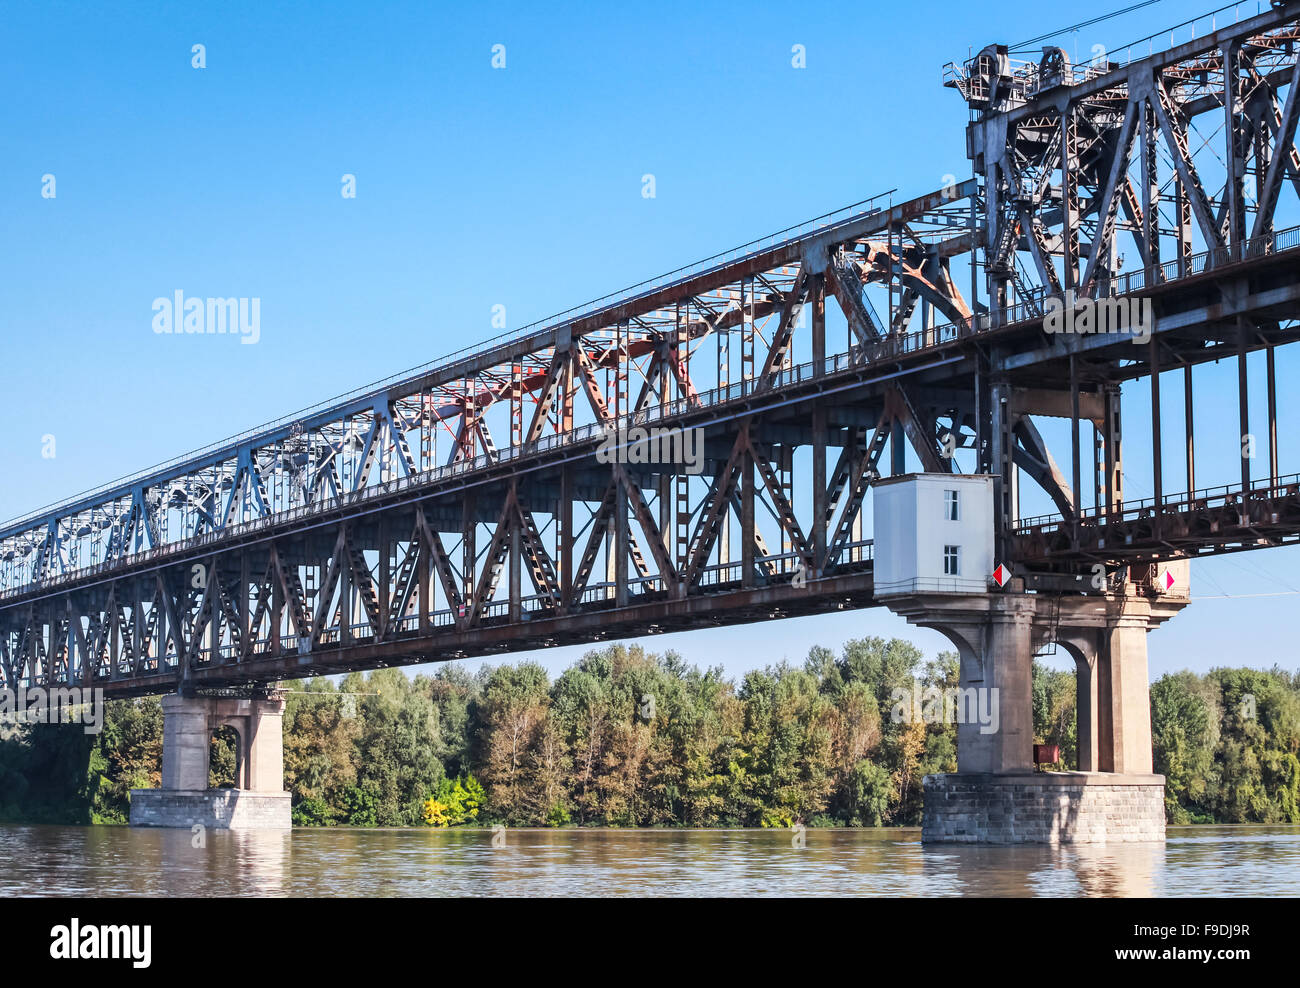 Pont du Danube connu sous le pont de l'amitié. Truss pont sur le Danube reliant entre banques bulgares et roumains Banque D'Images